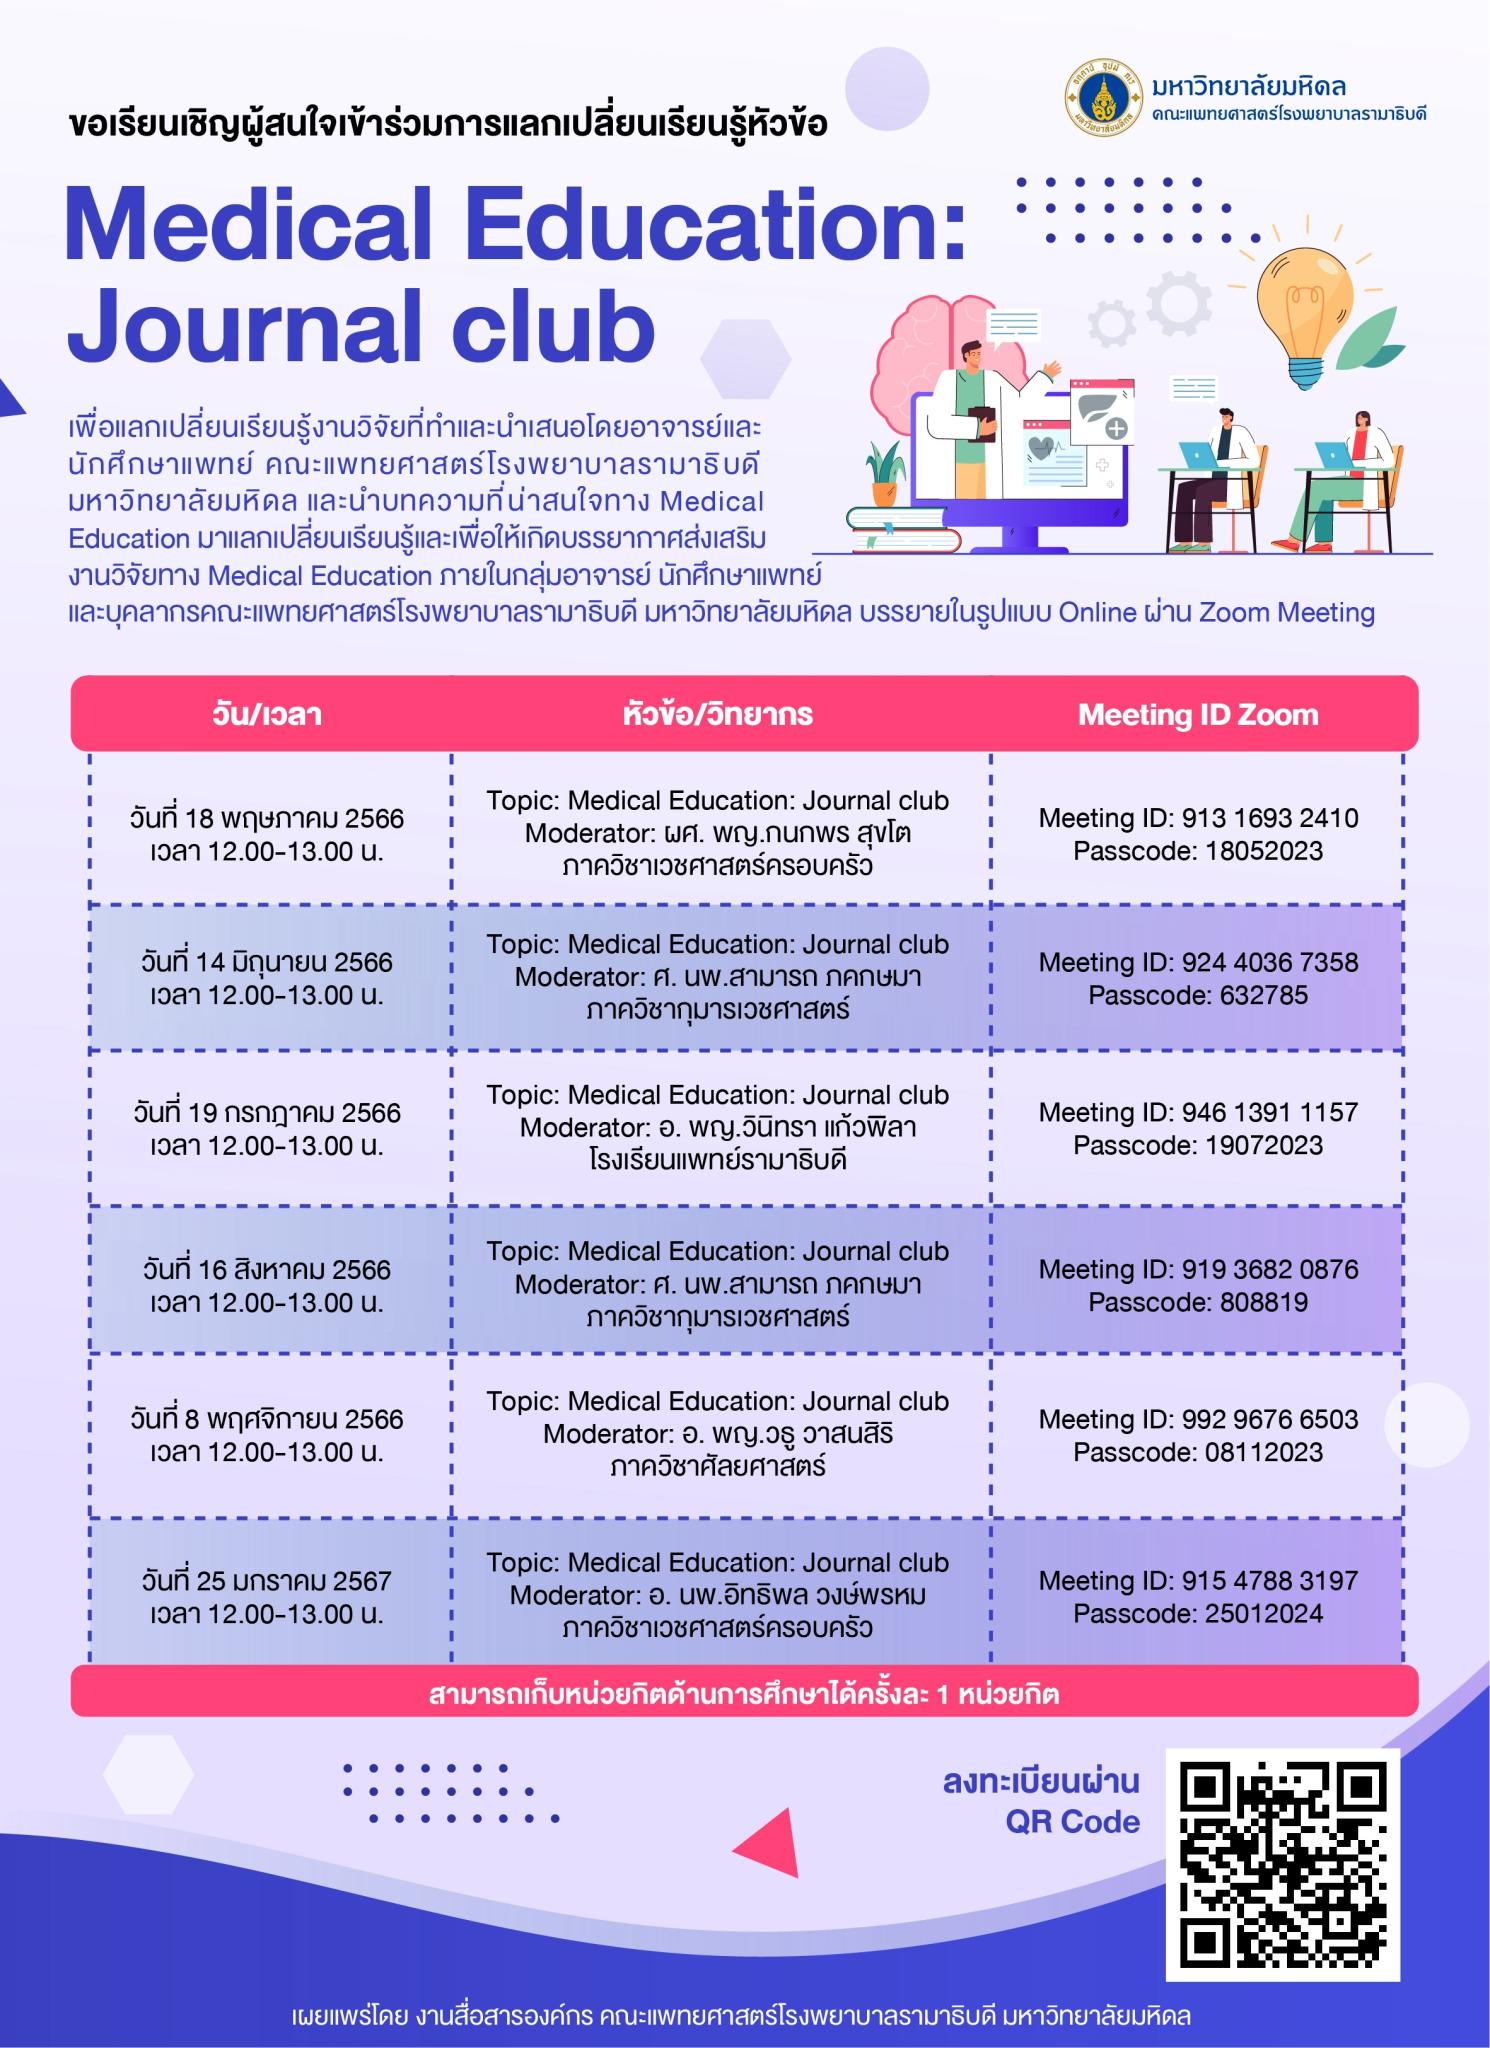 ขอเรียนเชิญผู้สนใจเจ้าร่วมการแลกเปลี่ยนเรียนรู้ หัวข้อ Medical Education: Journal club